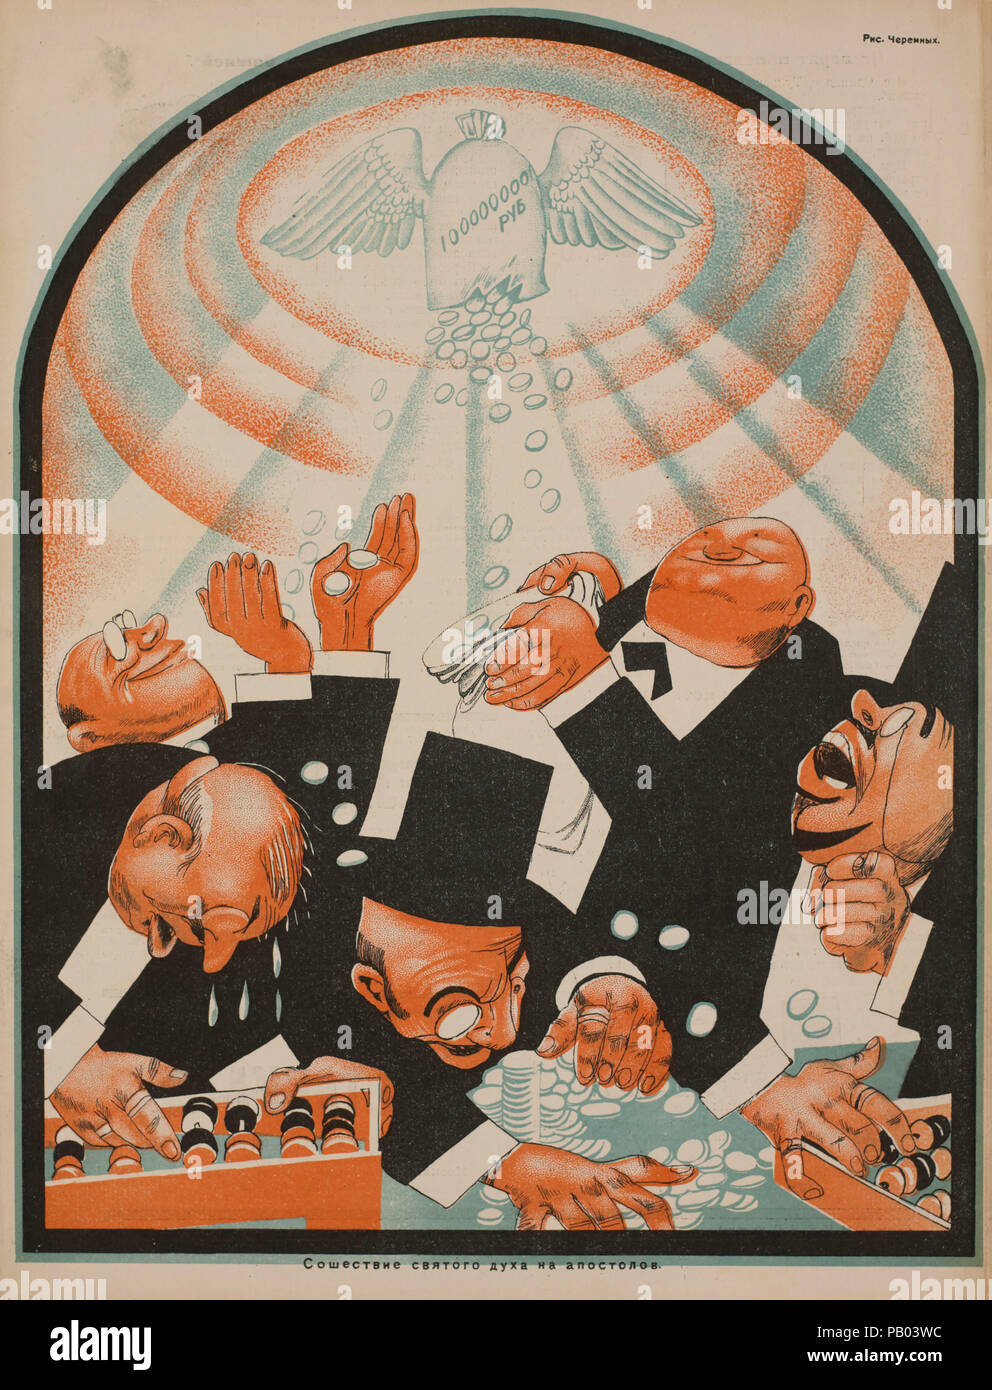 Soviet Propaganda Magazine Interior, Bezbozhnik u Stanka (Atheist at his Bench) Magazine, Illustration by Mikhail Cheremnykh, 1920's Stock Photo